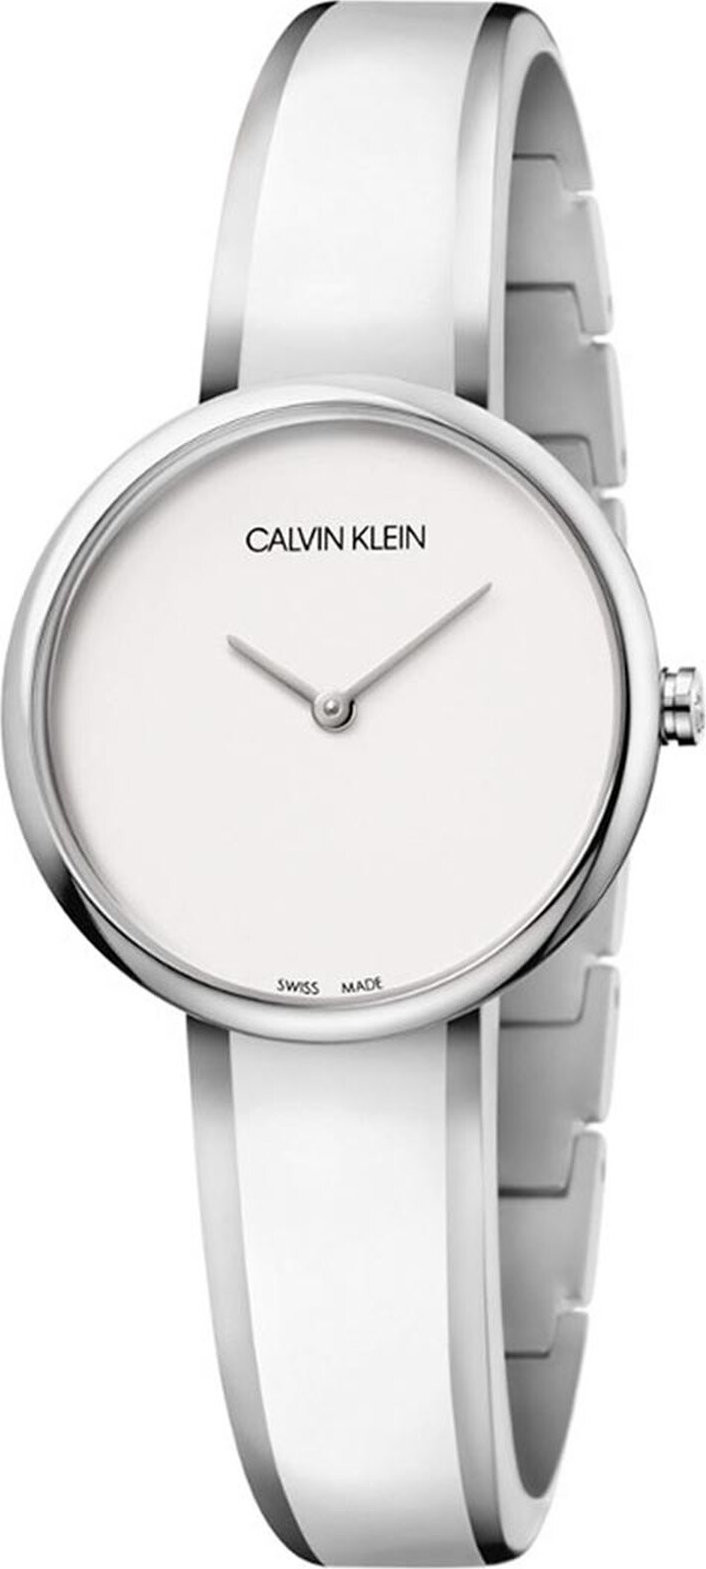 Hodinky Calvin Klein Lady K4E2N116 Silver/White/Silver